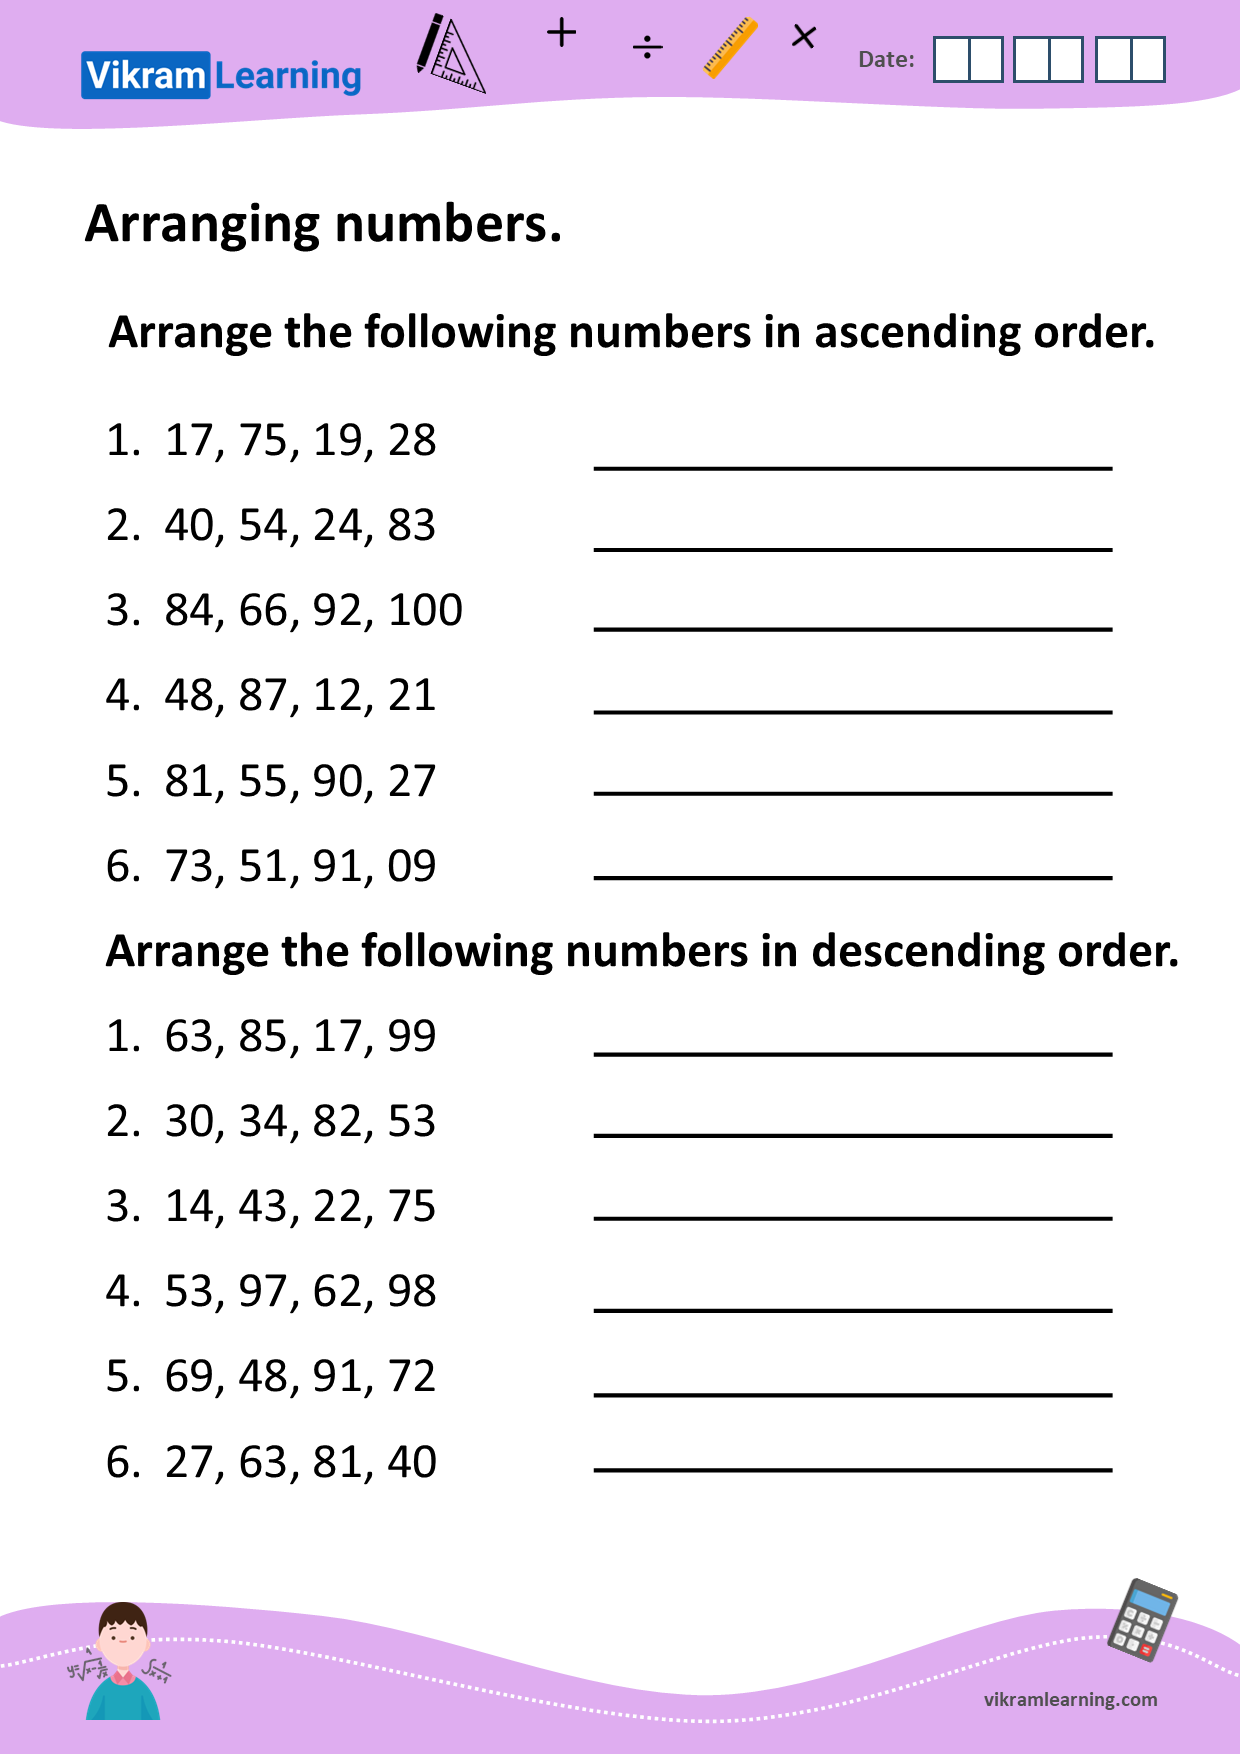 Download Arranging Numbers In Ascending Order And Descending Order Worksheets 6365